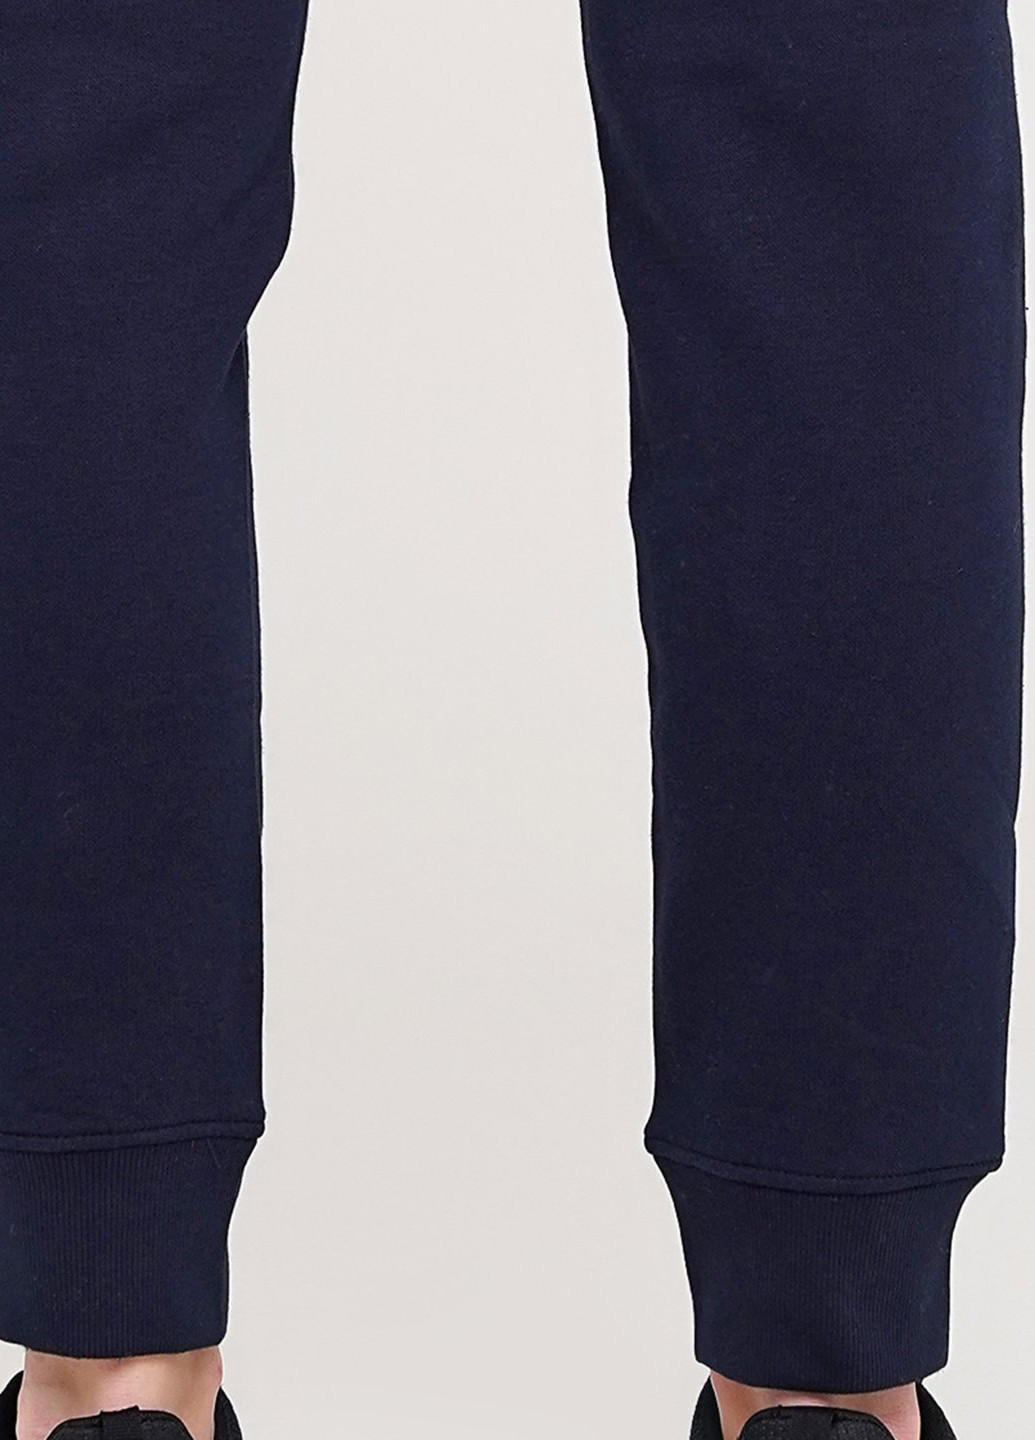 Темно-синие спортивные демисезонные джоггеры брюки Champion